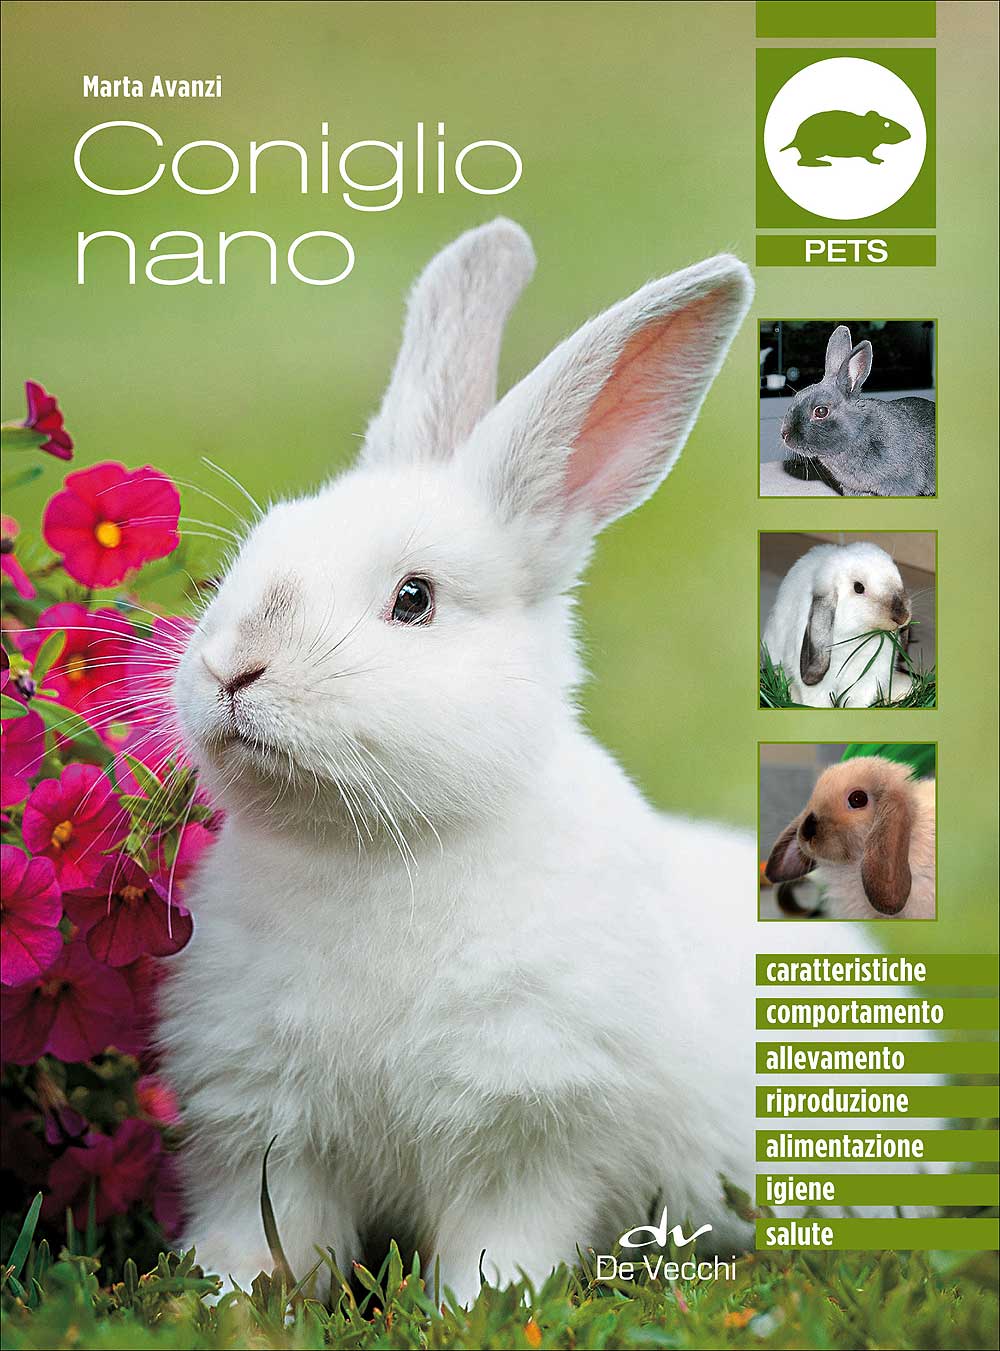 Coniglio nano::Caratteristiche - Comportamento - Allevamento - Riproduzione - Alimentazione -  Igiene - Salute